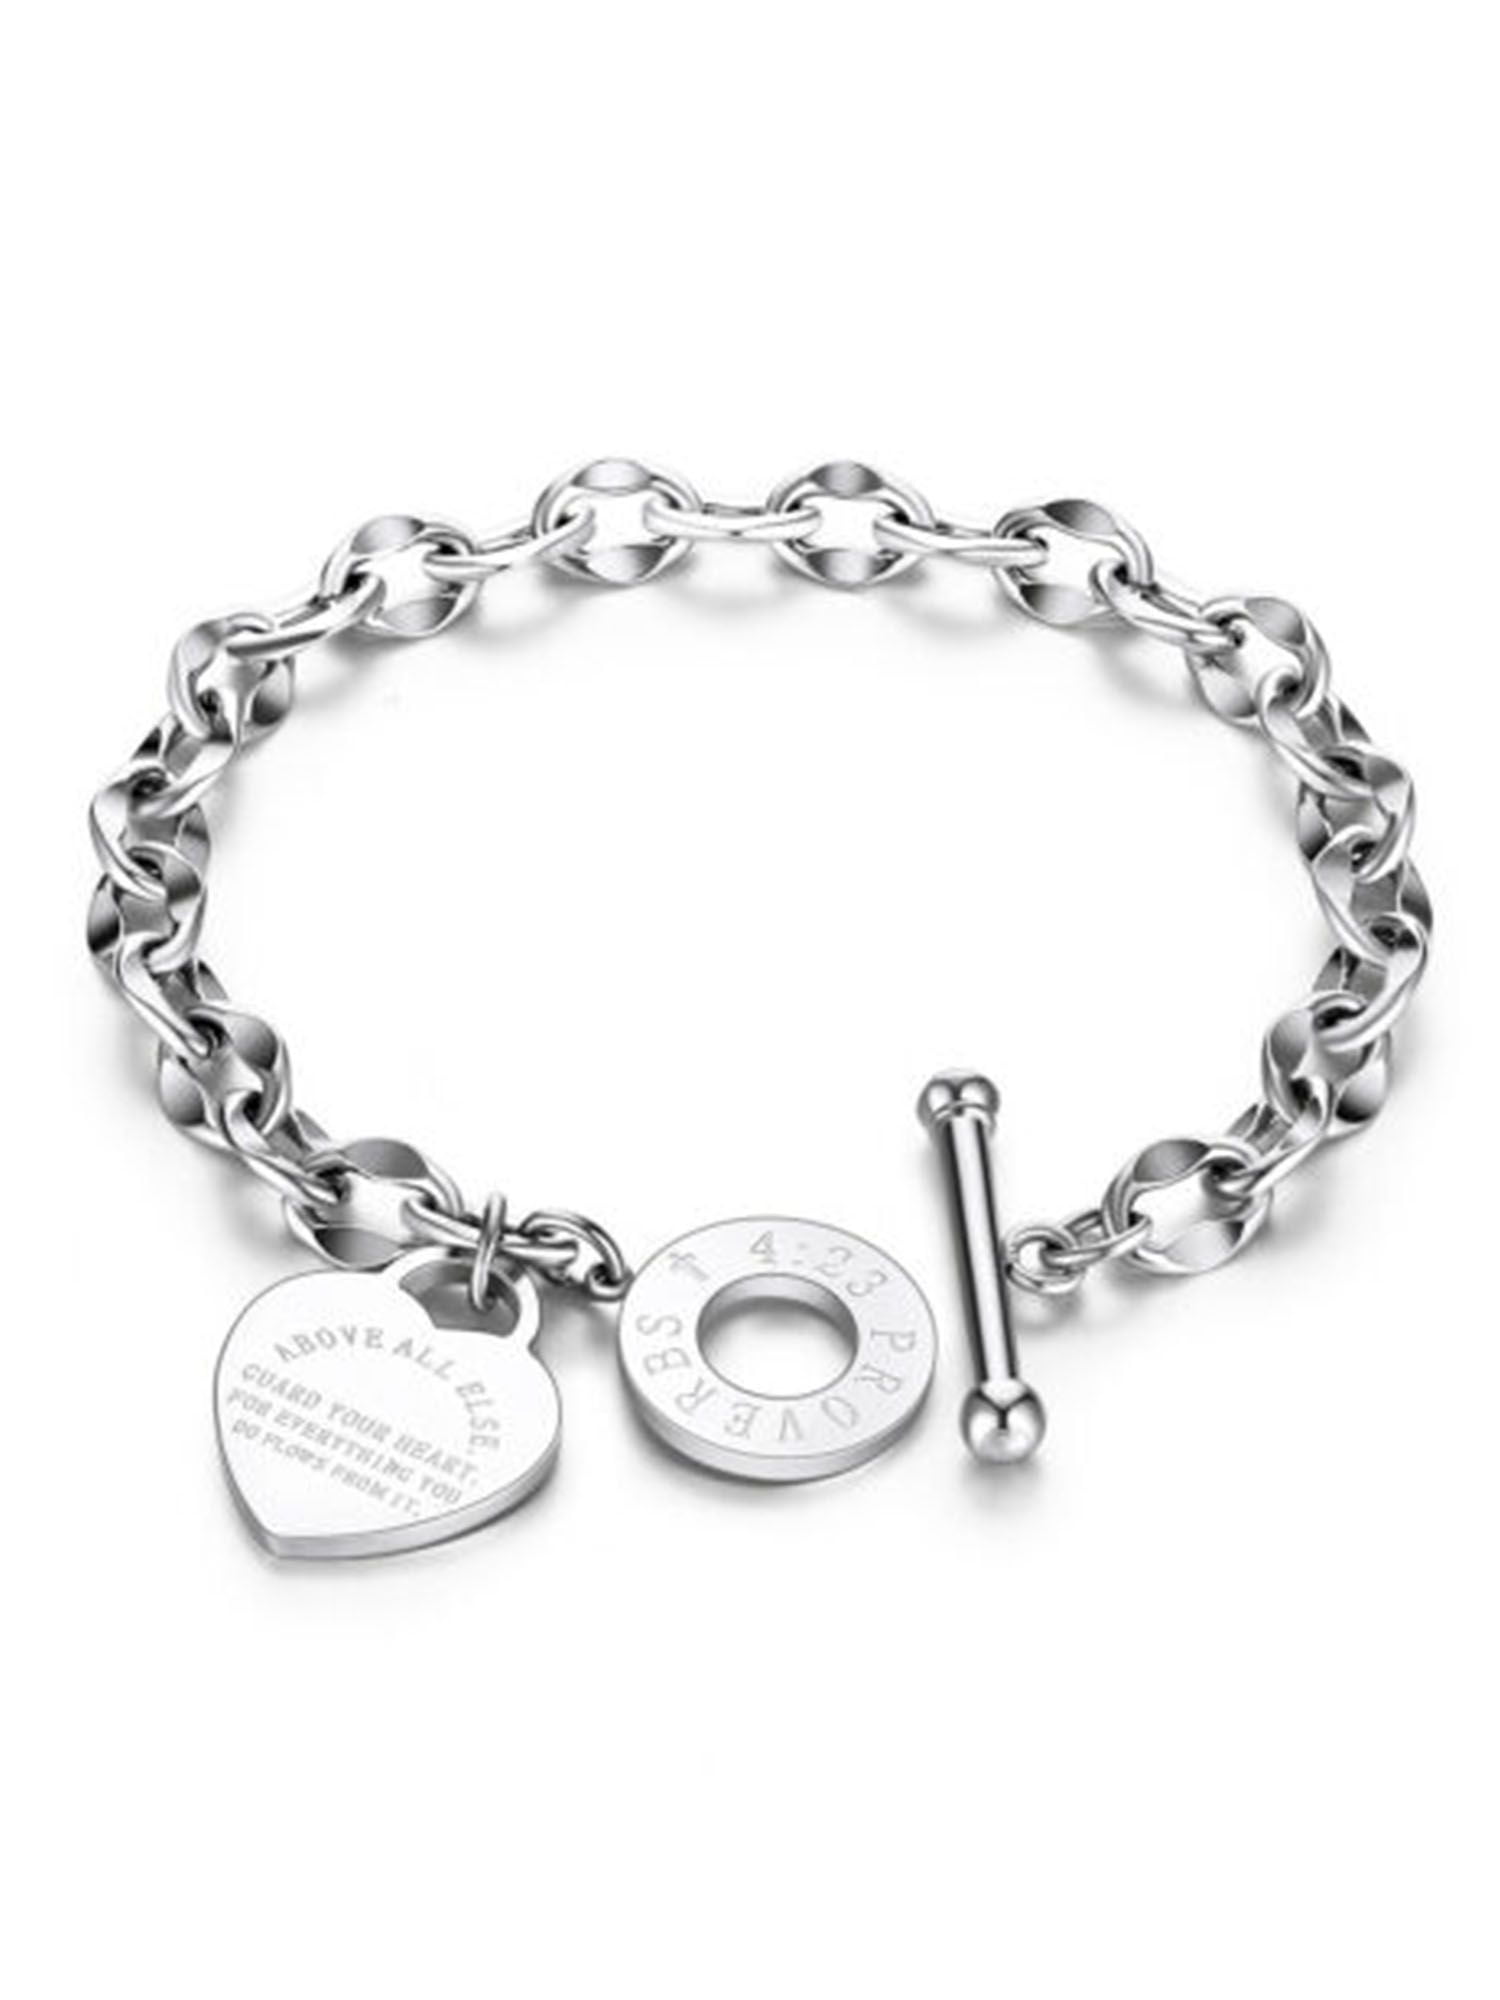 Spencer's Gifts Bracelet 